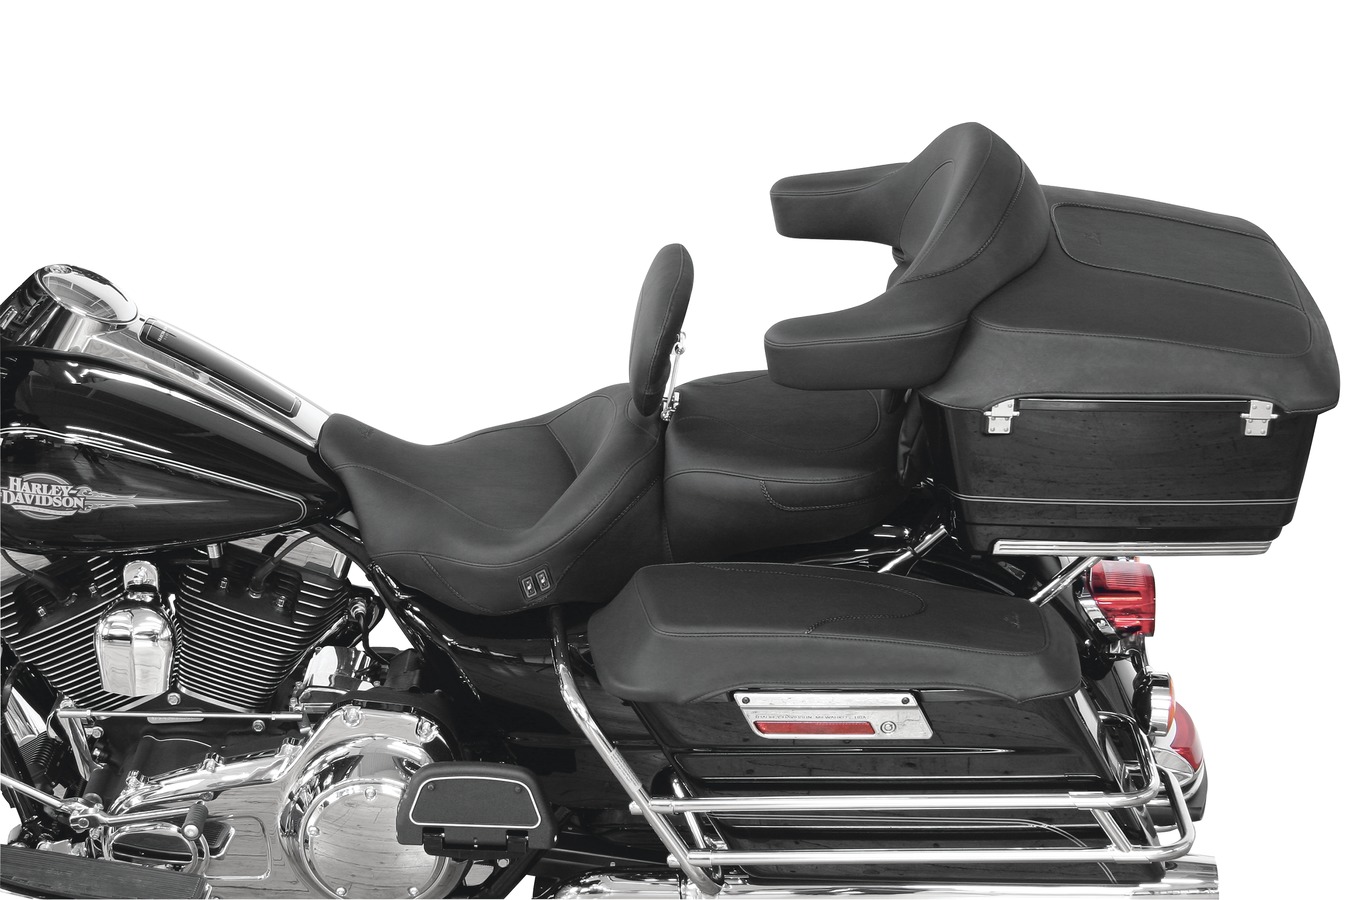 Driver Backrest Kit for Harley-Davidson FL Touring | Motorcycle